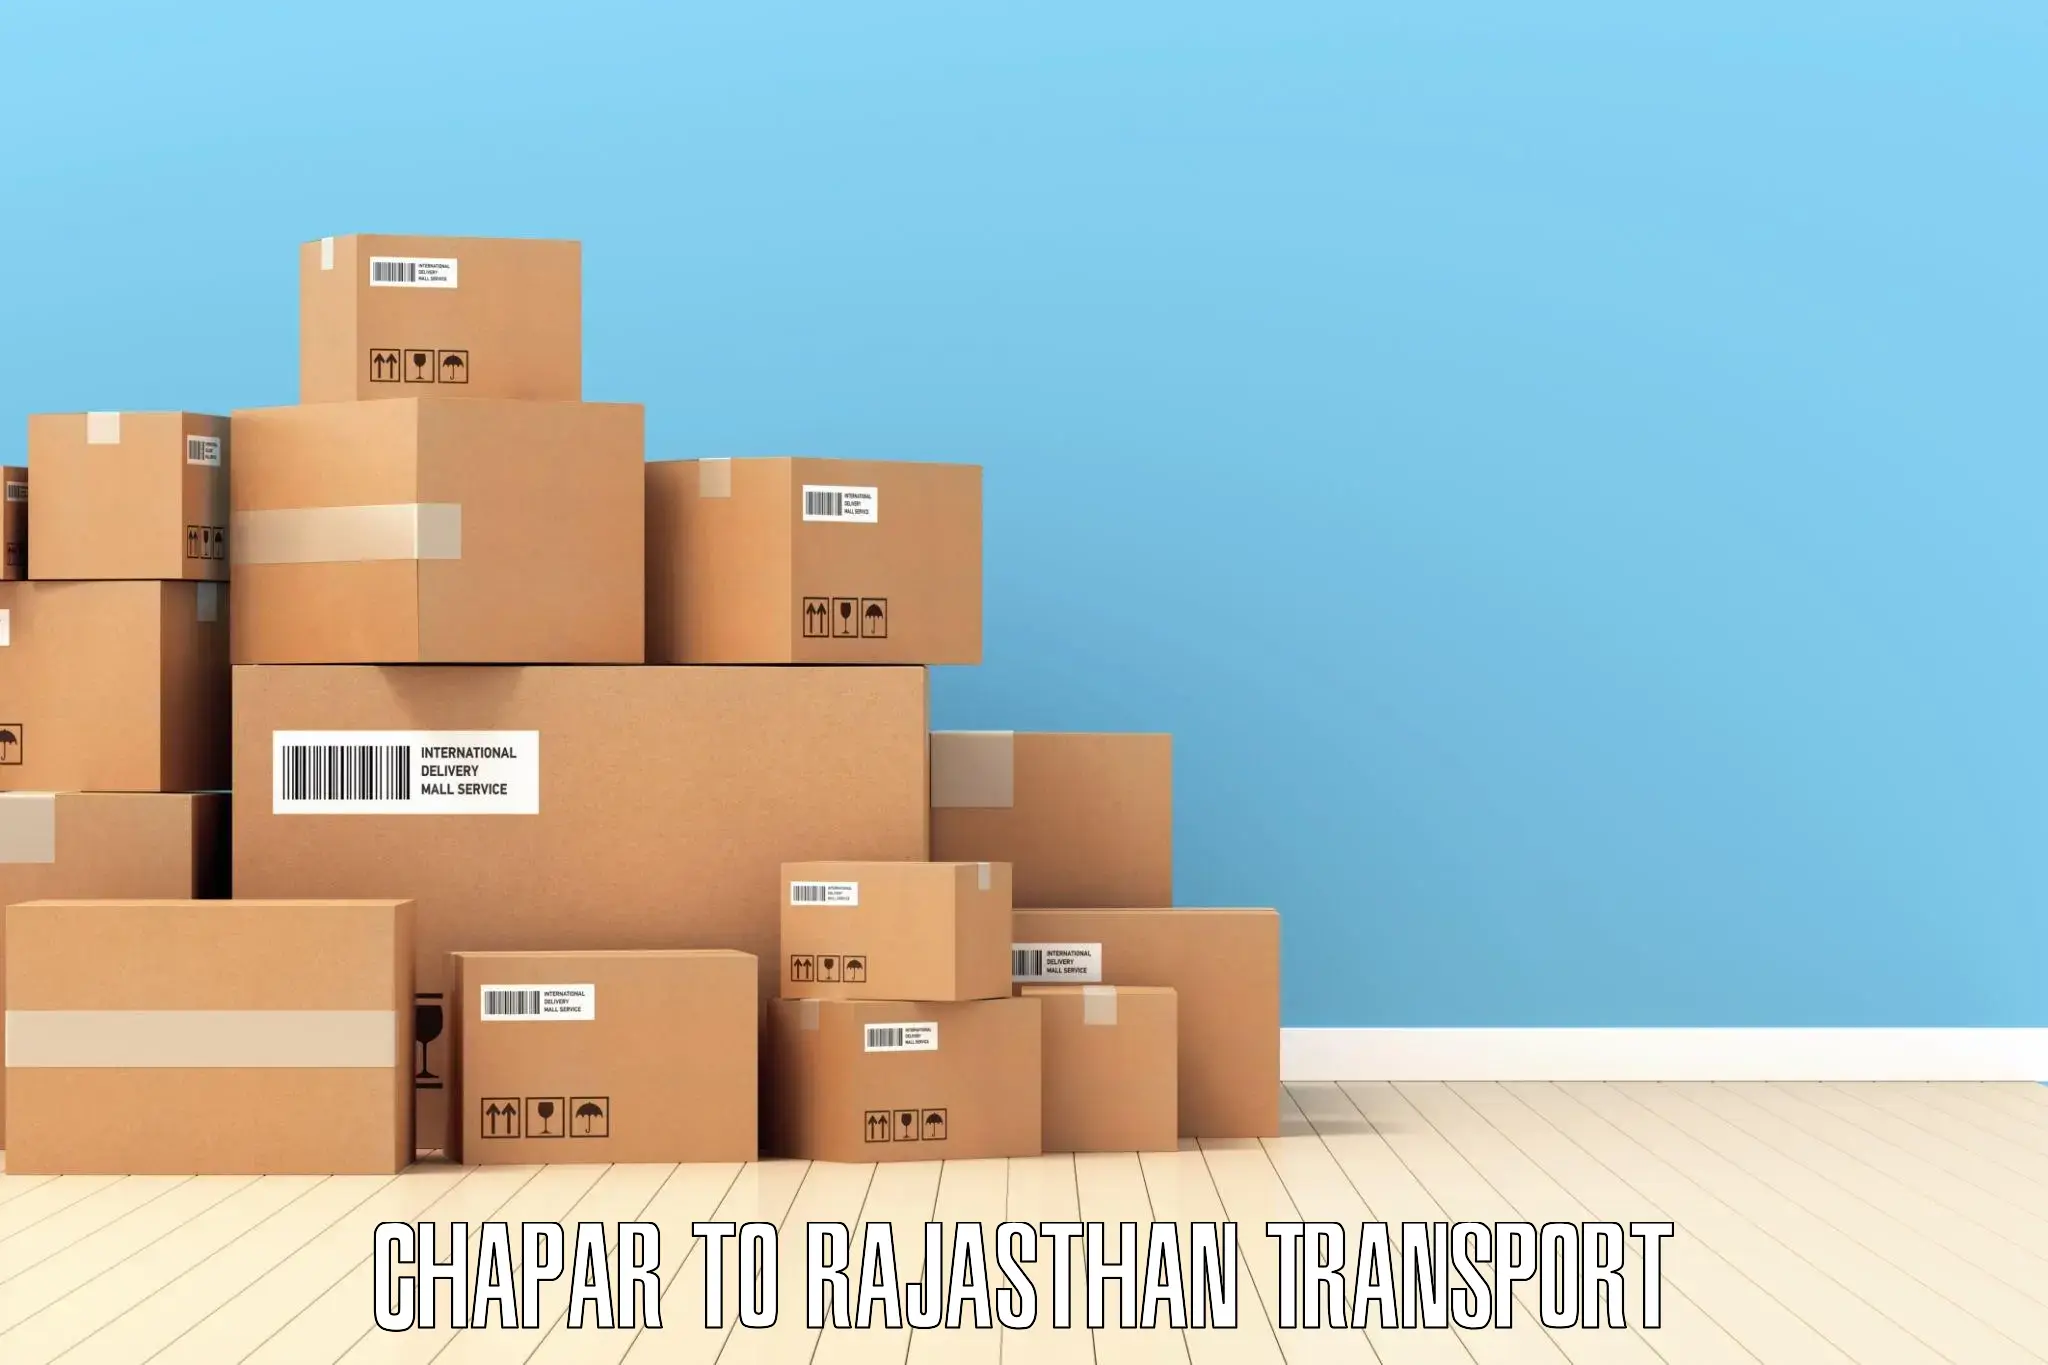 Commercial transport service Chapar to Ras Pali